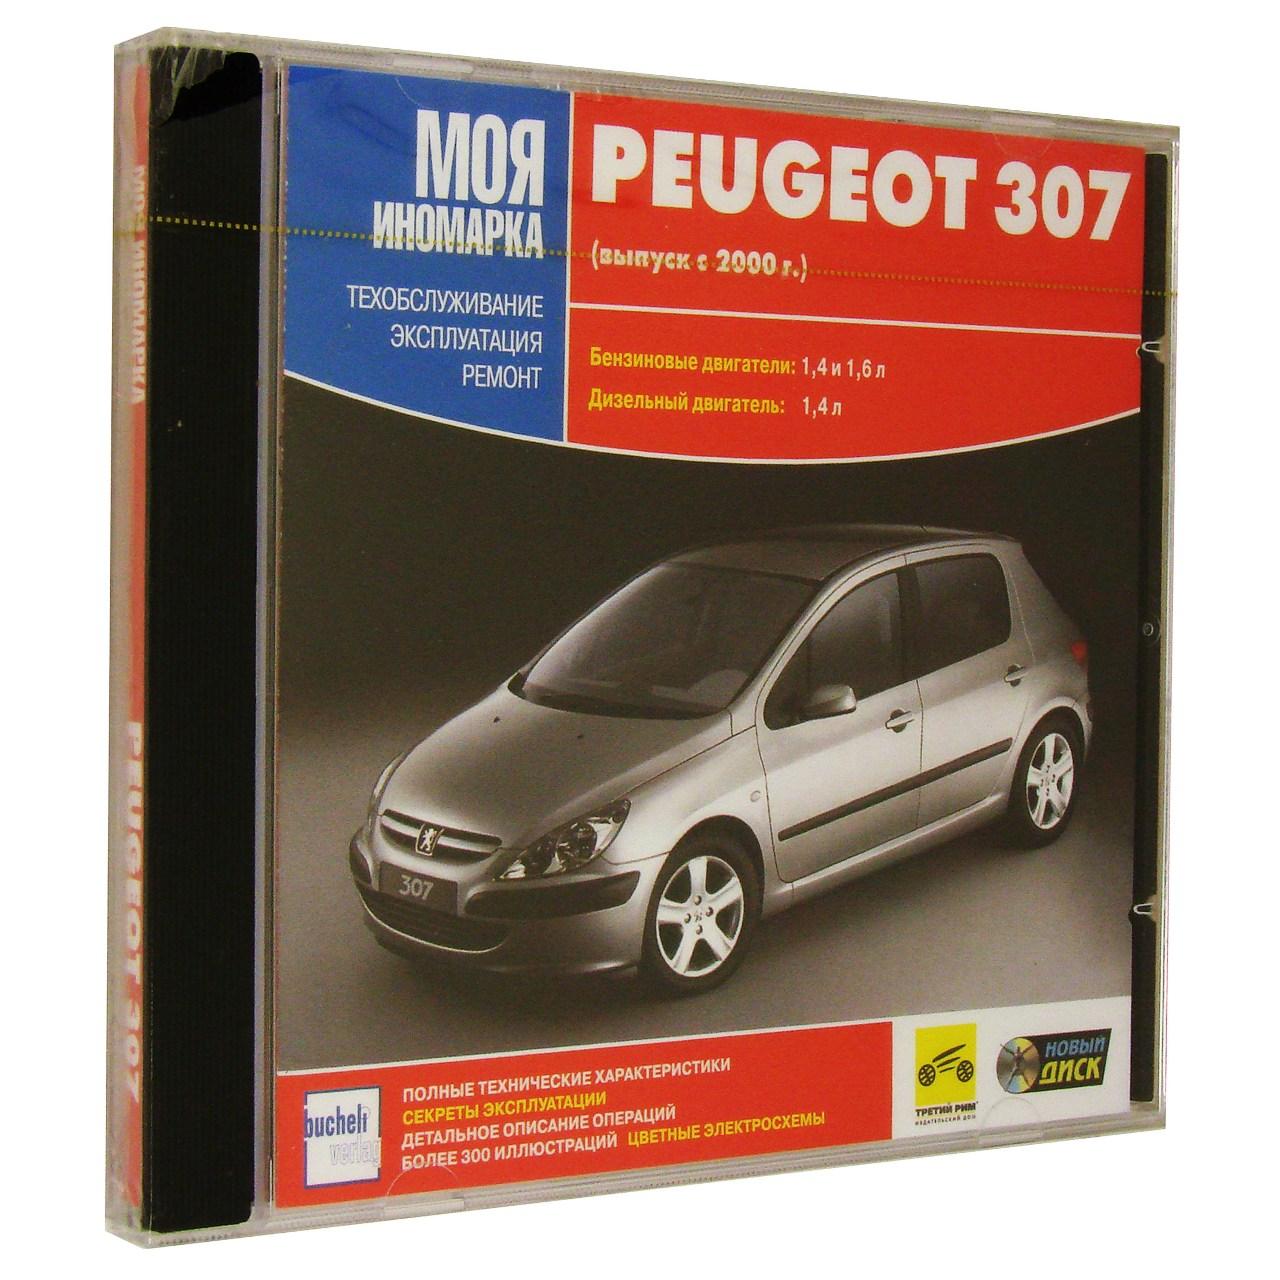 Компьютерный компакт-диск Peugeot 307. ’Моя иномарка’. (ПК), фирма "Новый диск", 1CD